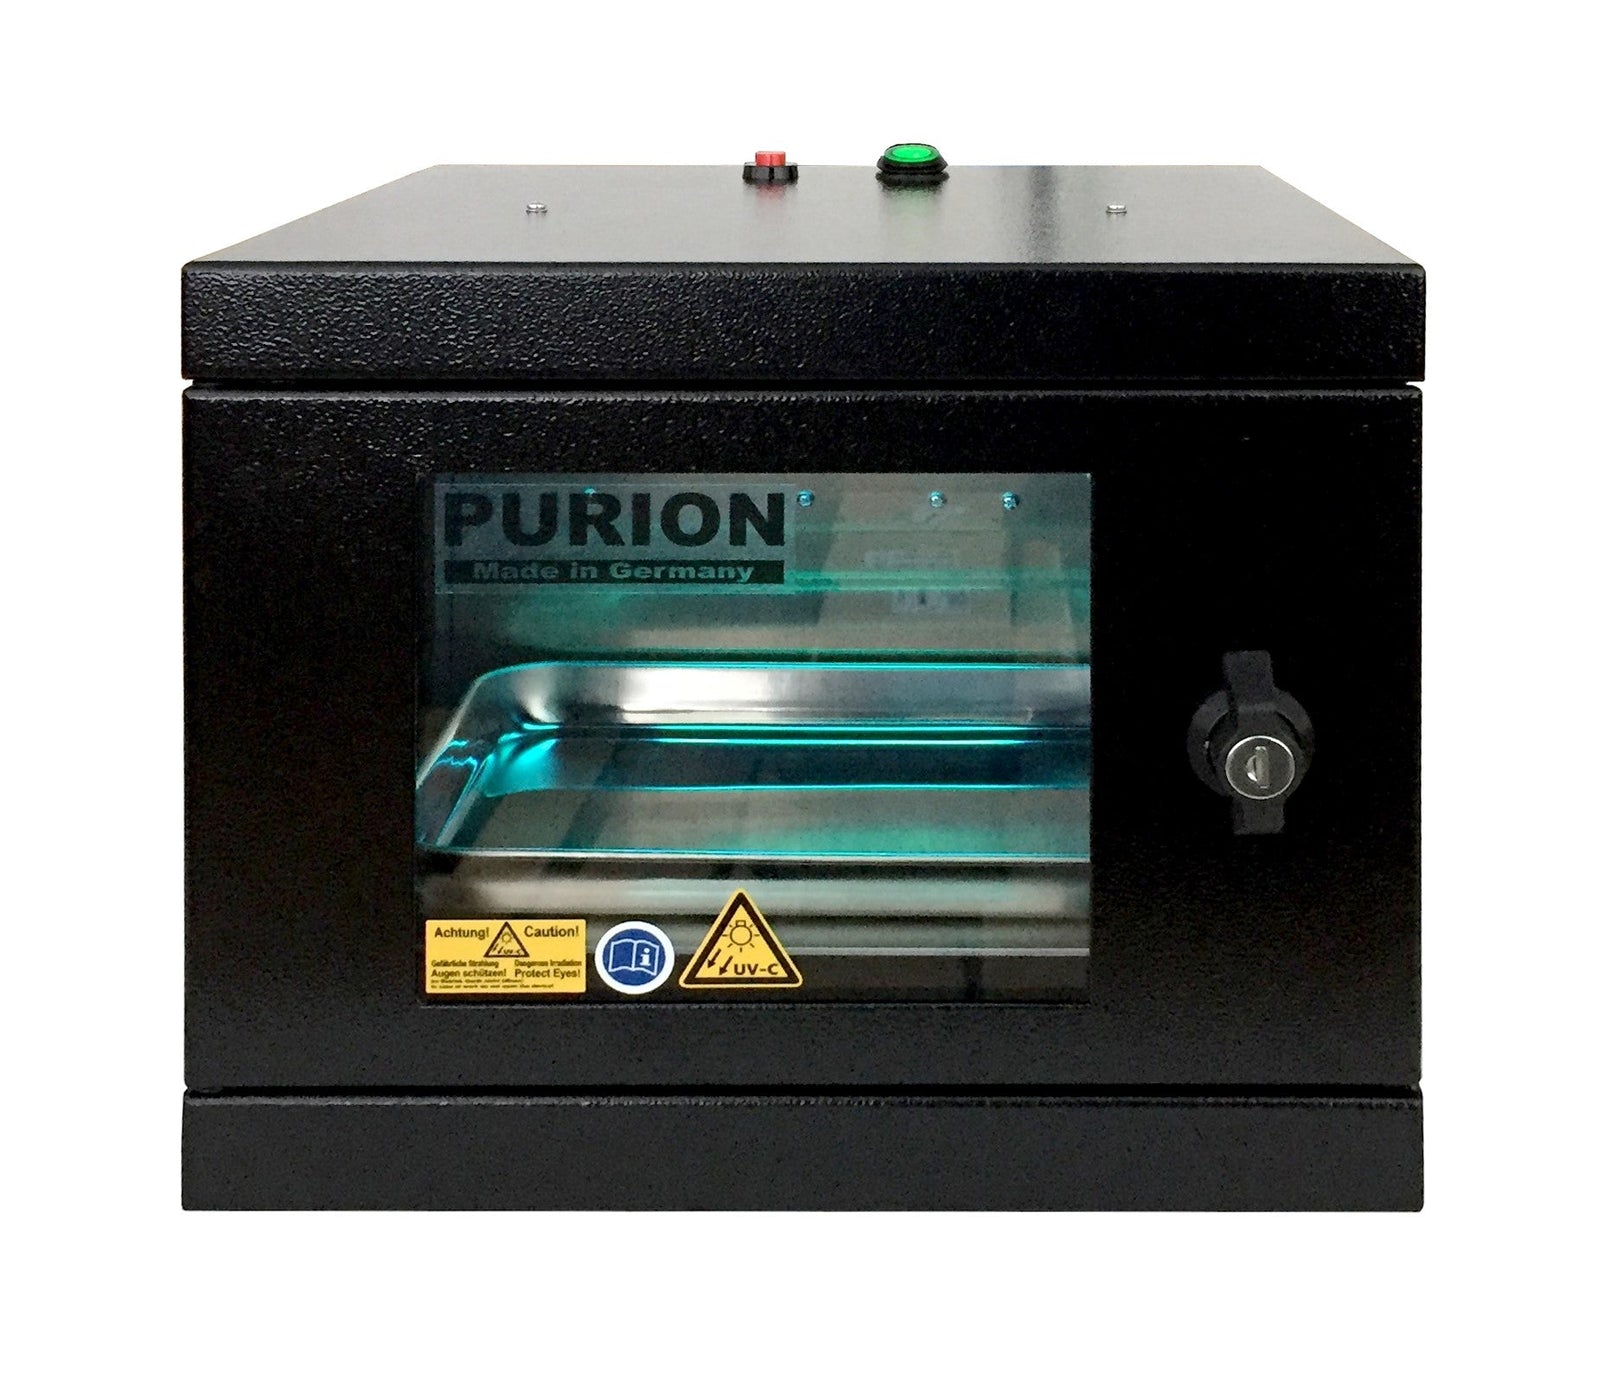 Ein PURION UVC Box Small Plus-Gerät mit dem Wort PURION darauf, entwickelt für die Desinfektion und Entfernung von Keimen mithilfe der UVC-Box-Technologie der PURION GmbH.